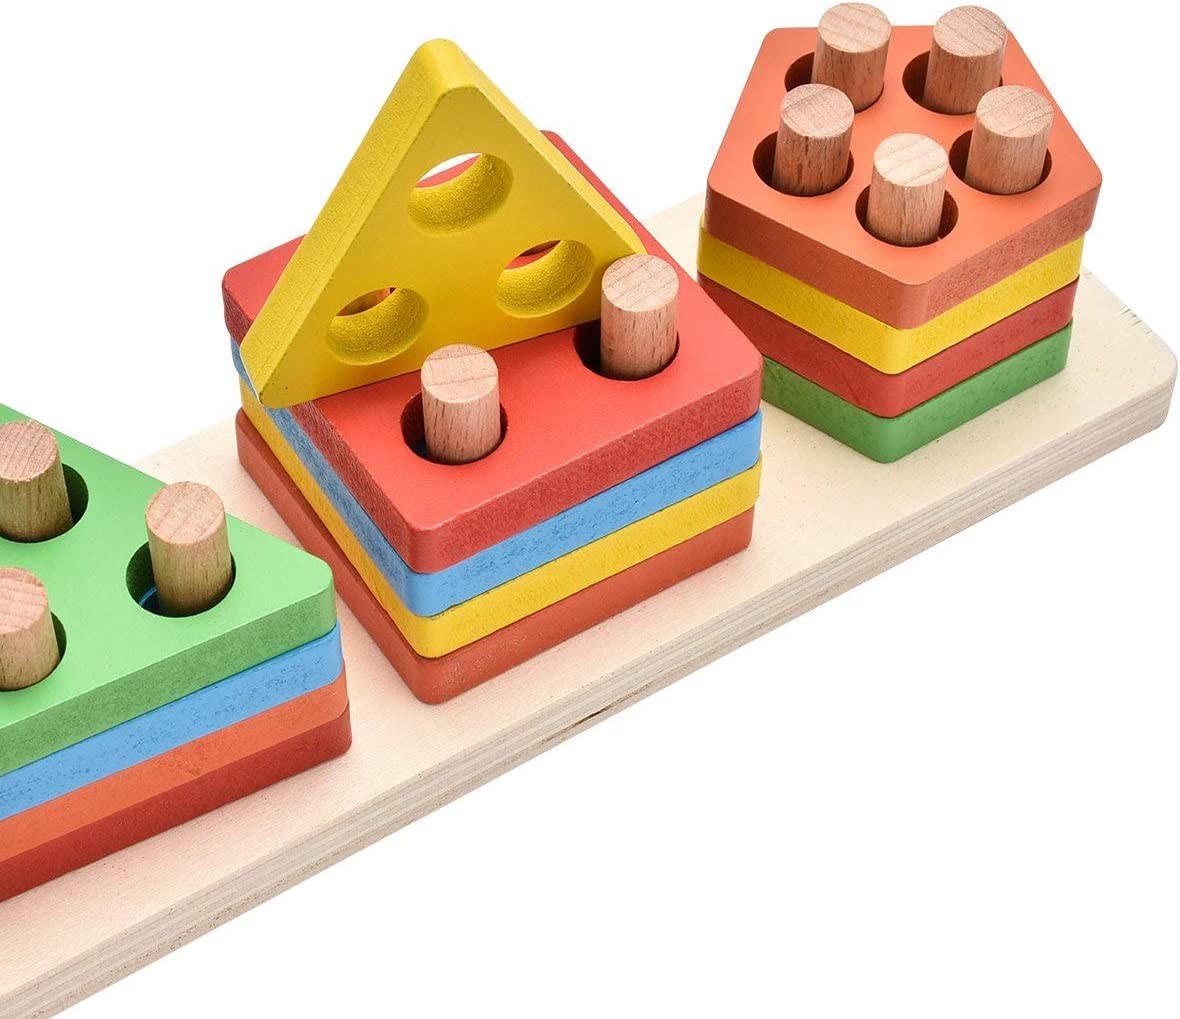 KanCai - Brinquedos Educativos de Madeira Bloco Placa Pilha Formas Geométricas - 1+